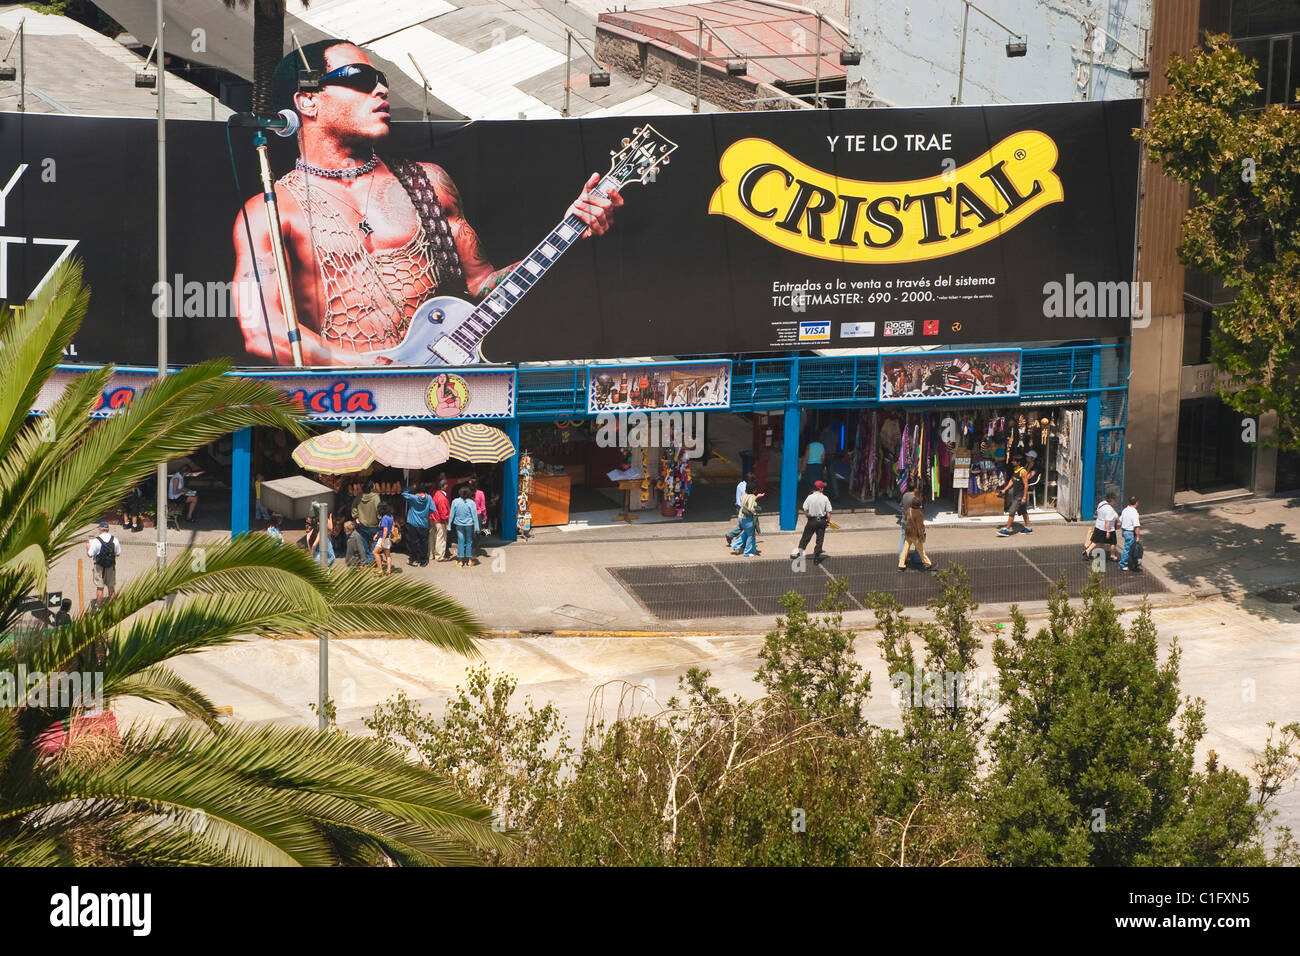 Advertising hoarding and market entrance on the major thoroughfare of Avenida Libertador Bernardo O'Higgins; Santiago, Chile Stock Photo